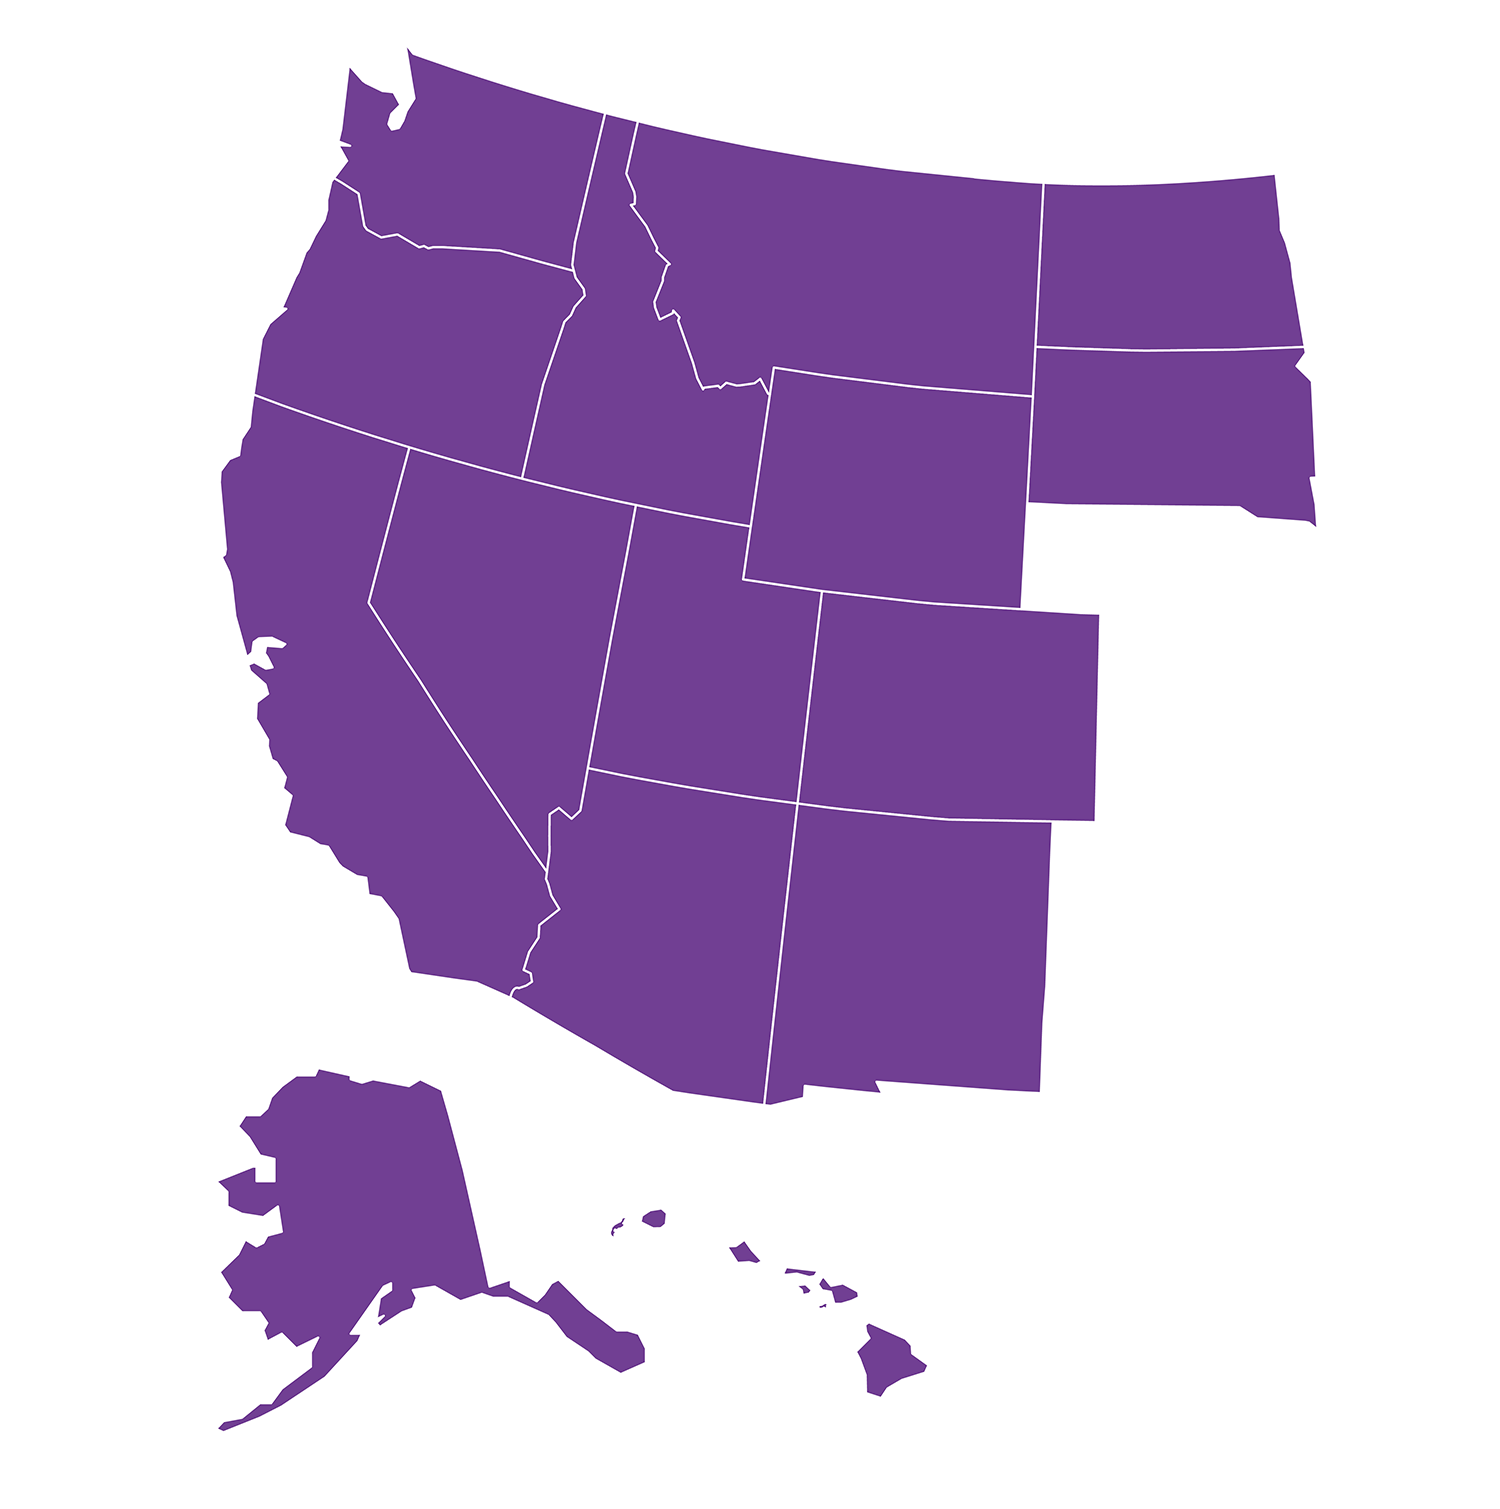 West Coast Map